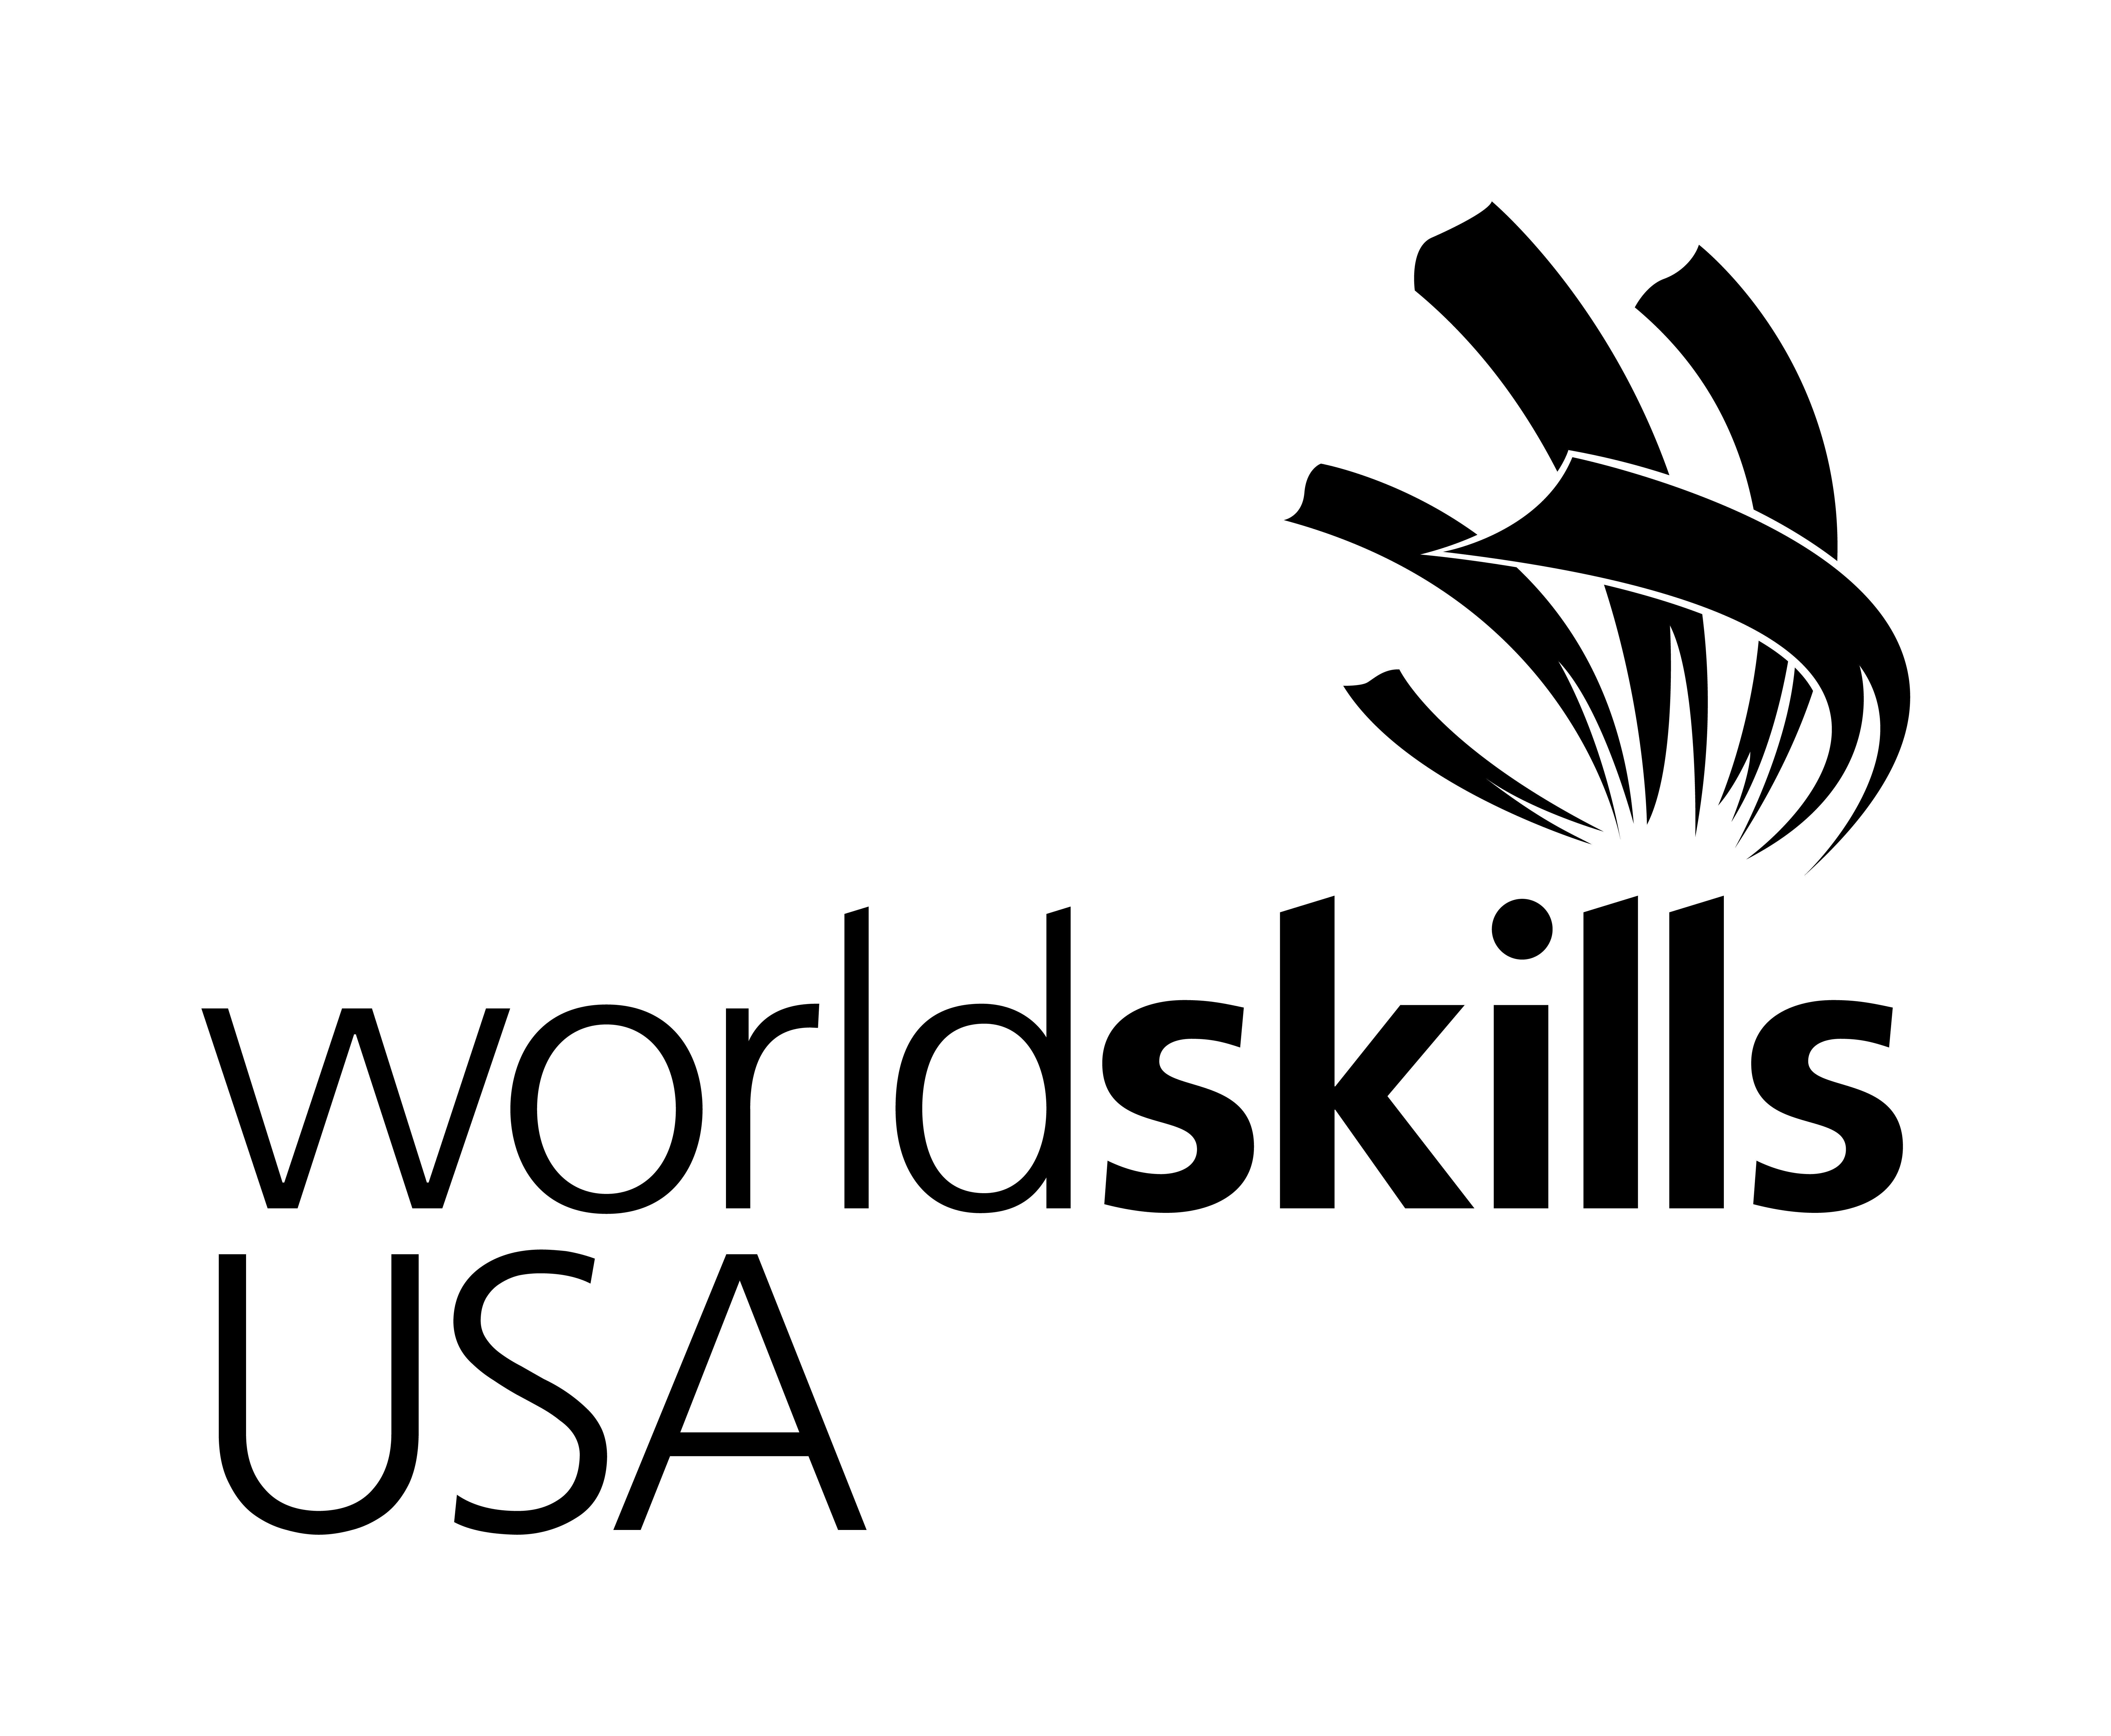 WorldSkills USA logo. Black